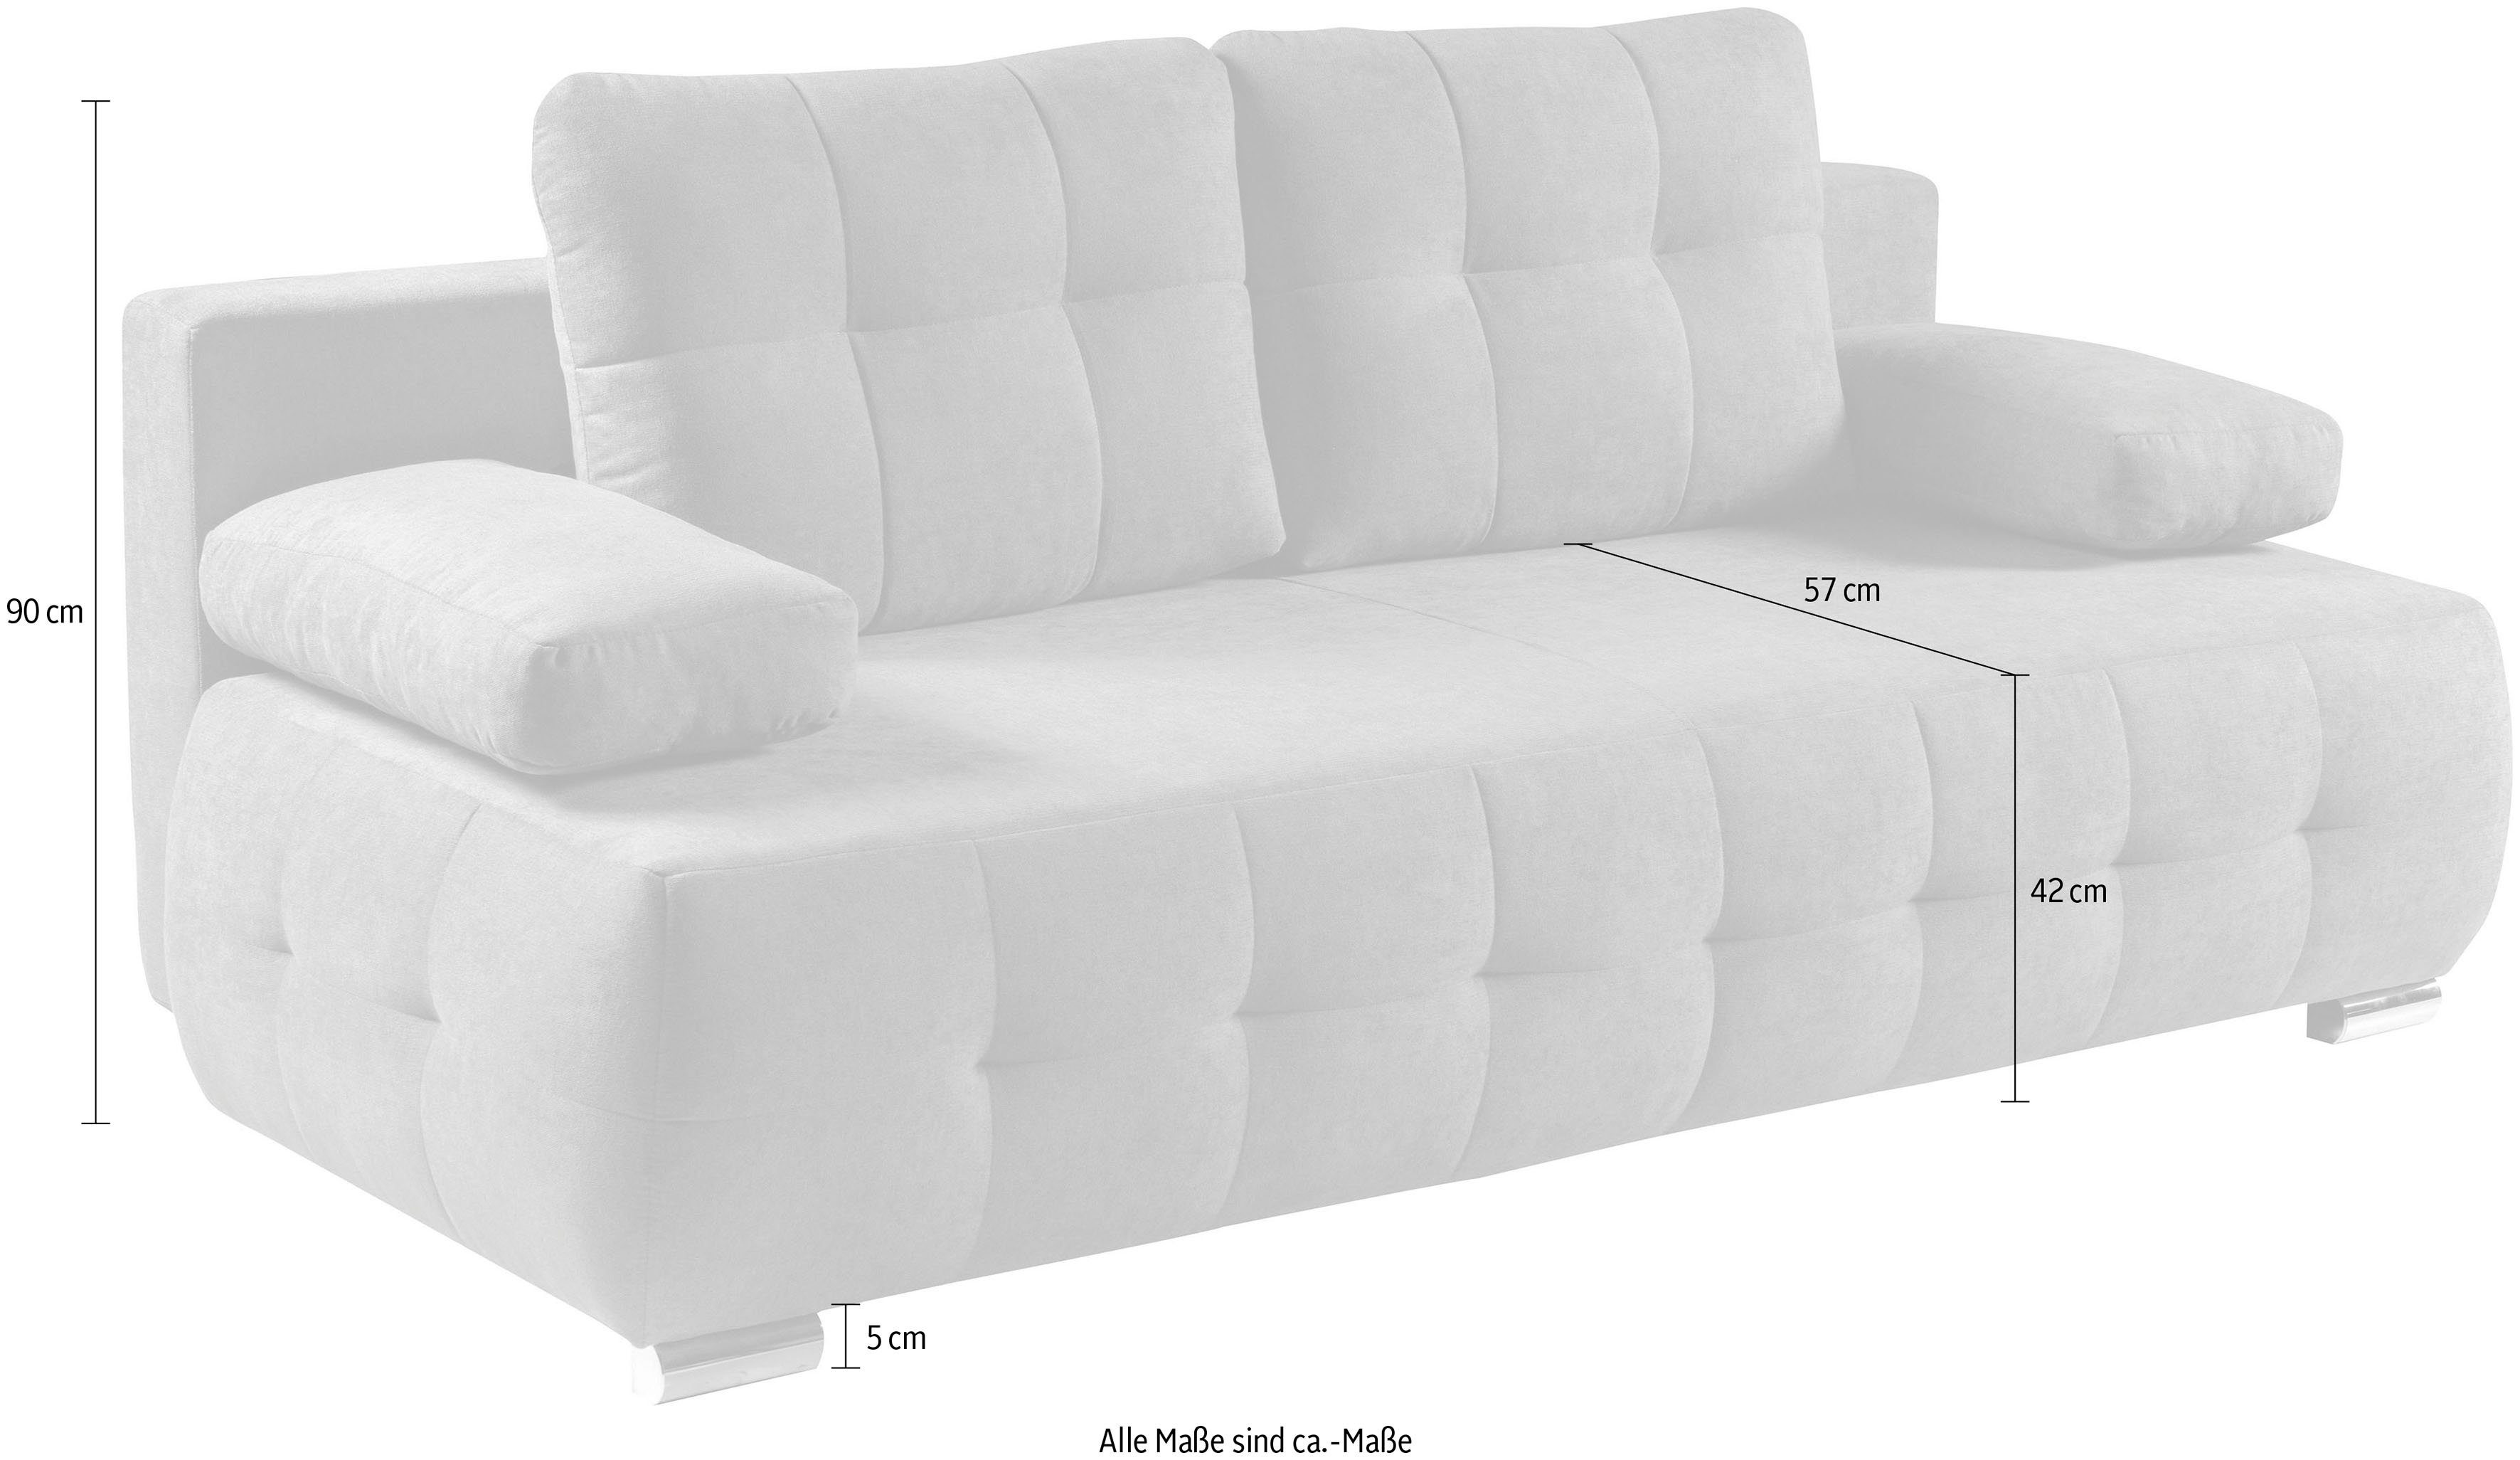 2-Sitzer grau Schlafcouch und Bettkasten | mit Schlafsofa Federkern WERK2 & Indigo, grau | grau Sofa